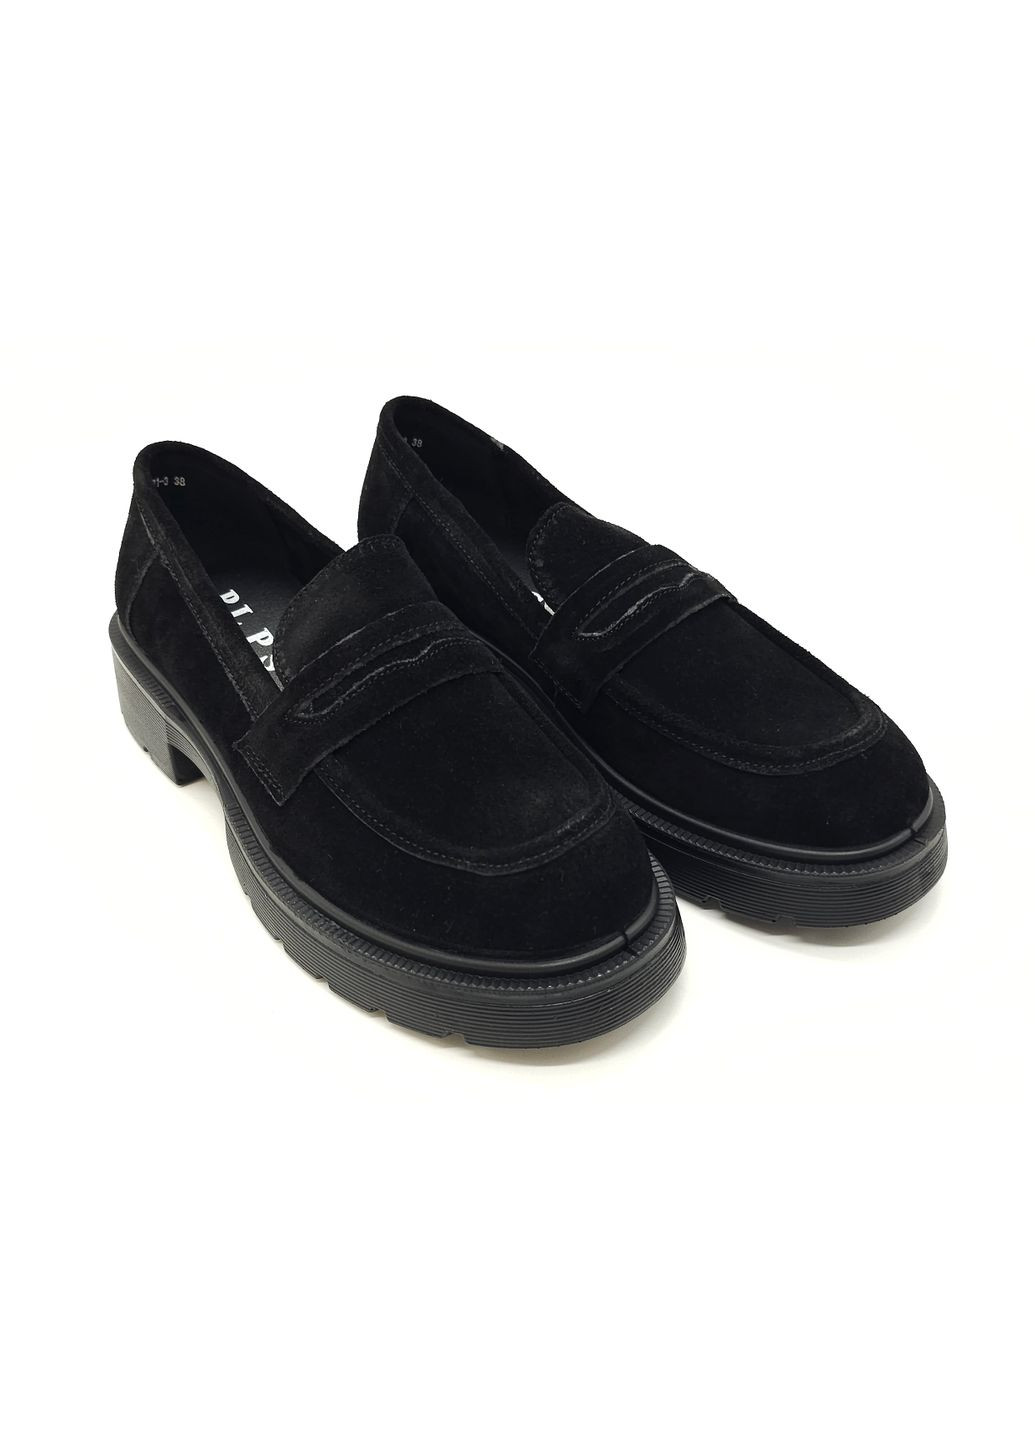 Женские туфли черные замшевые PP-19-10 23 см(р) PL PS